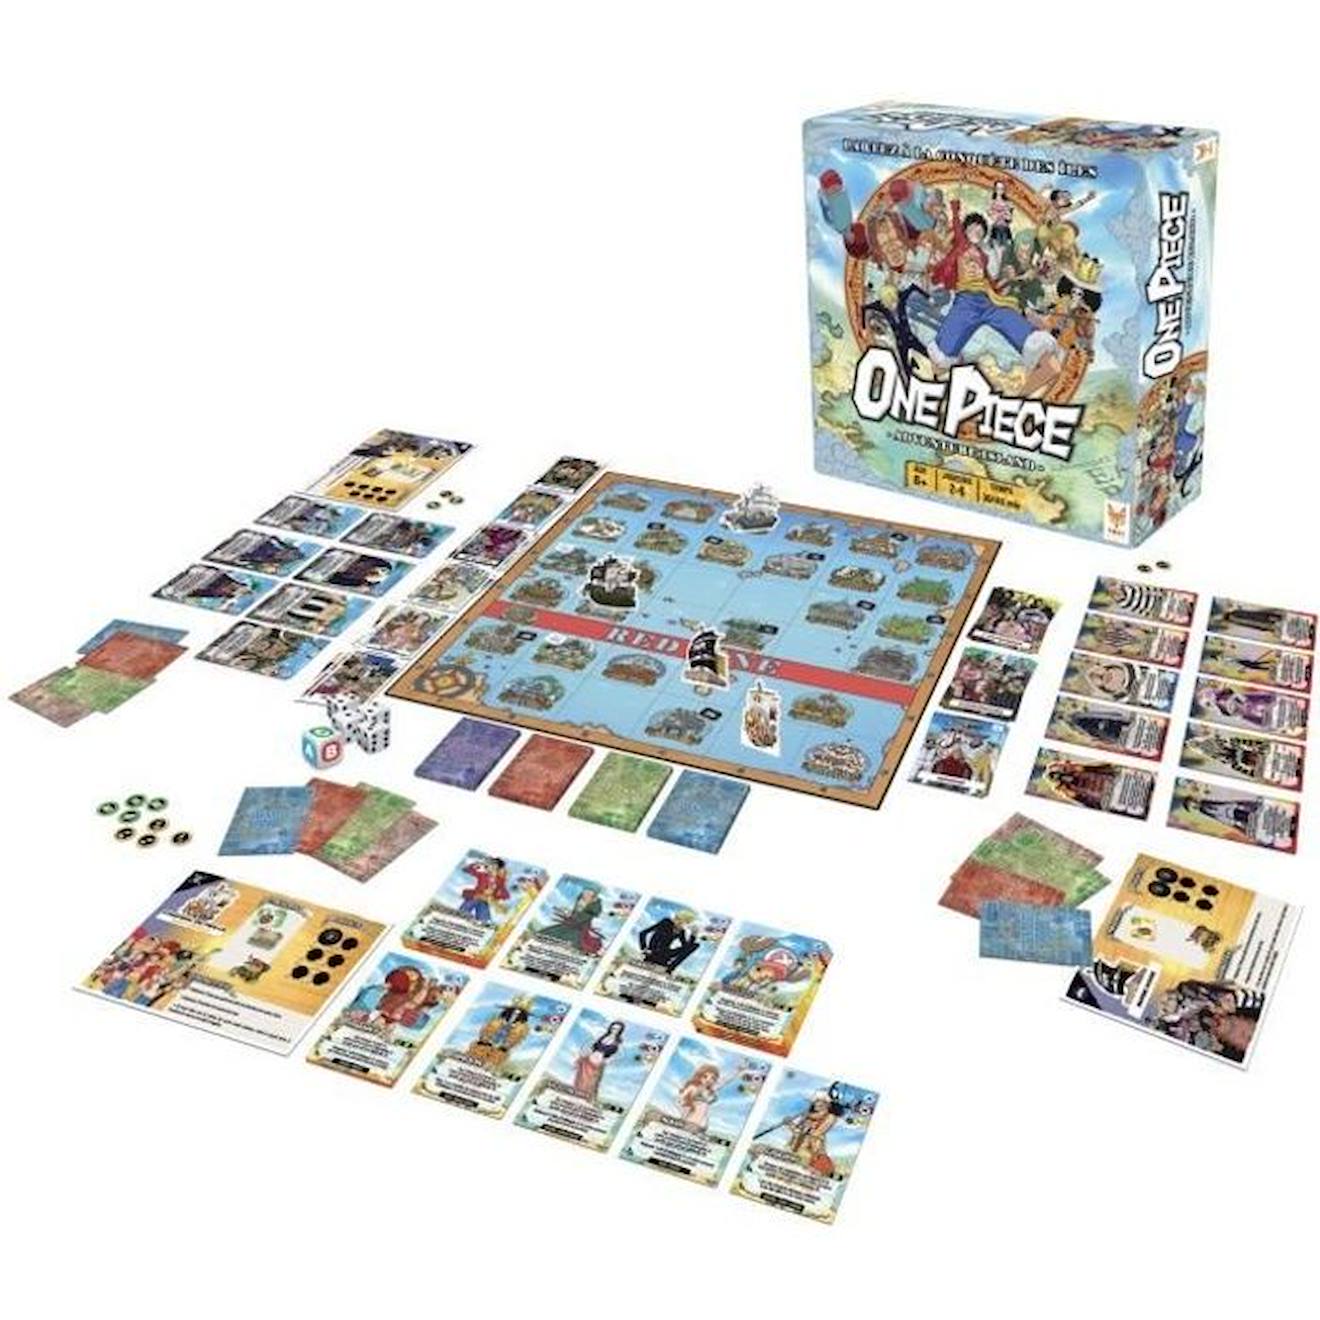 Jeu De Société Stratégie One Piece - Topi Games - 90 Pièces - 2 Modes De Jeu - Cartes Haki Gris